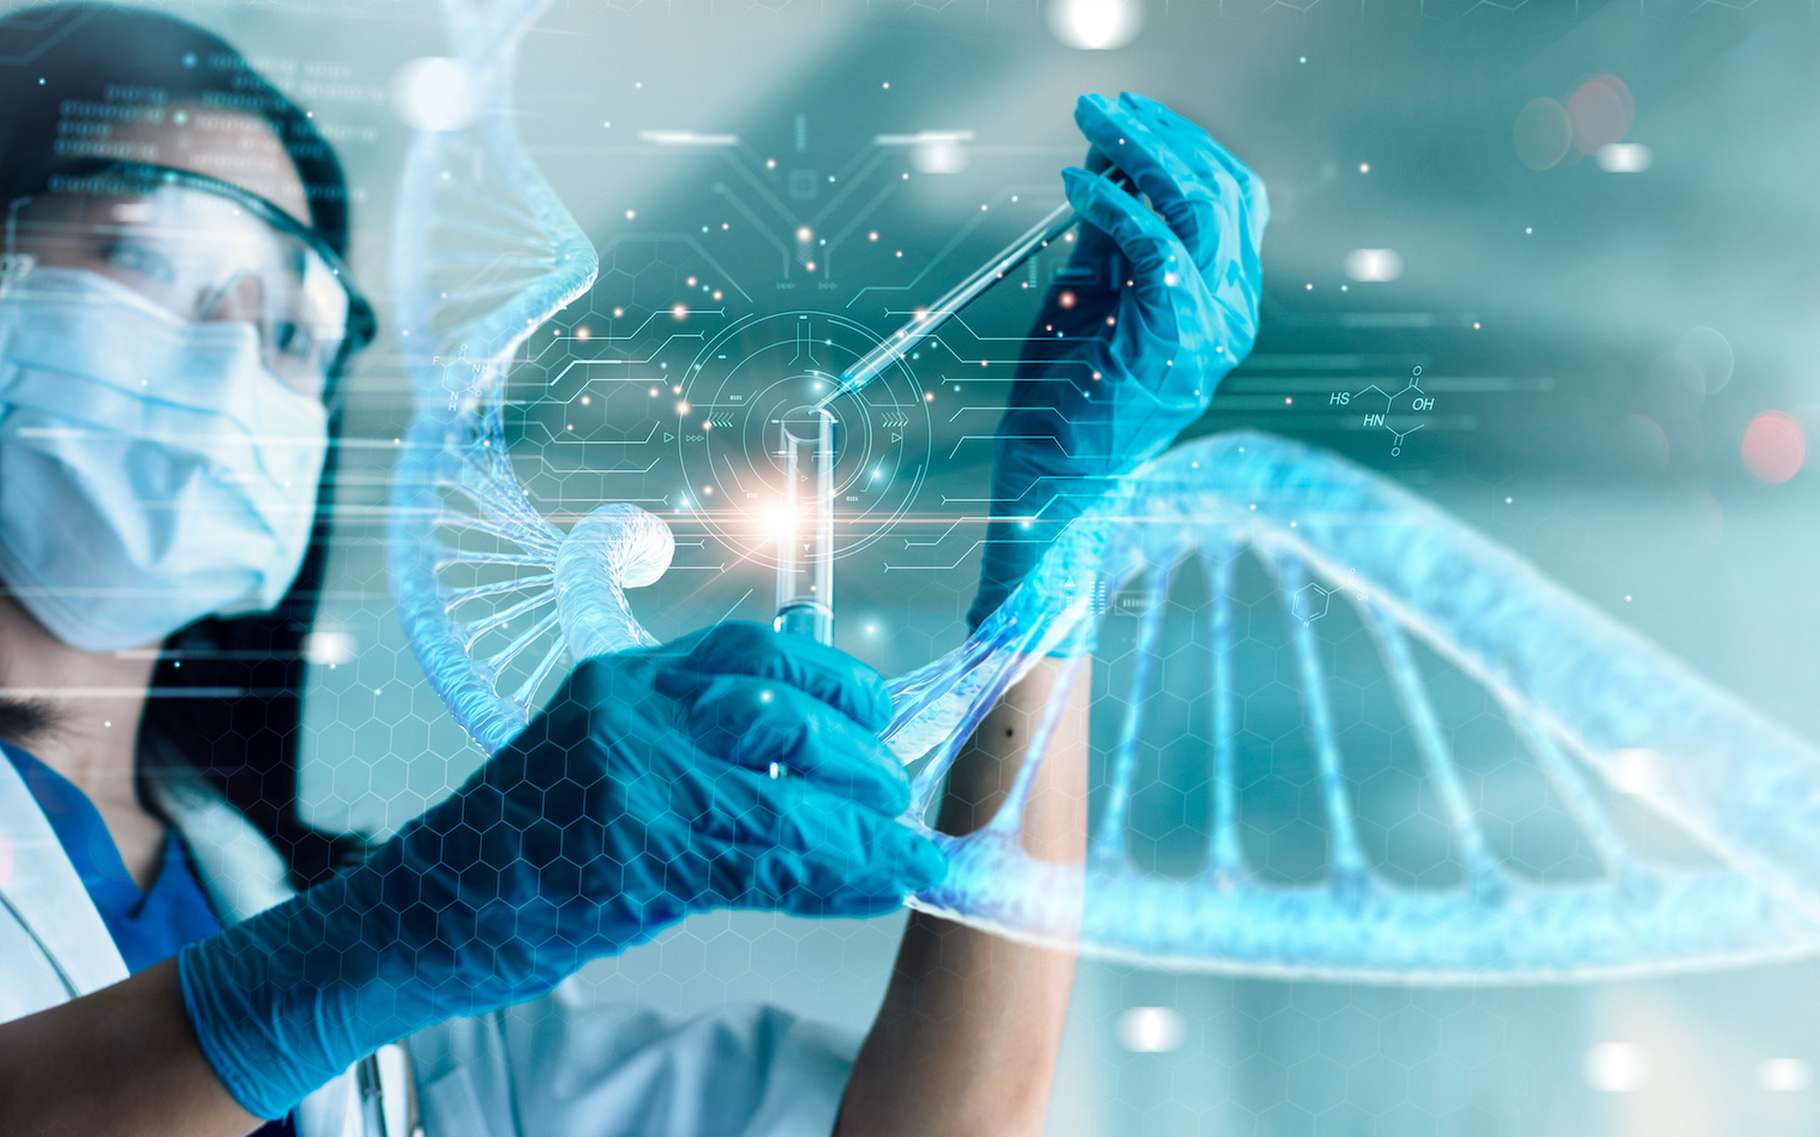 Il y a de l'ADN humain partout : pourquoi cela pourrait poser des problèmes ?